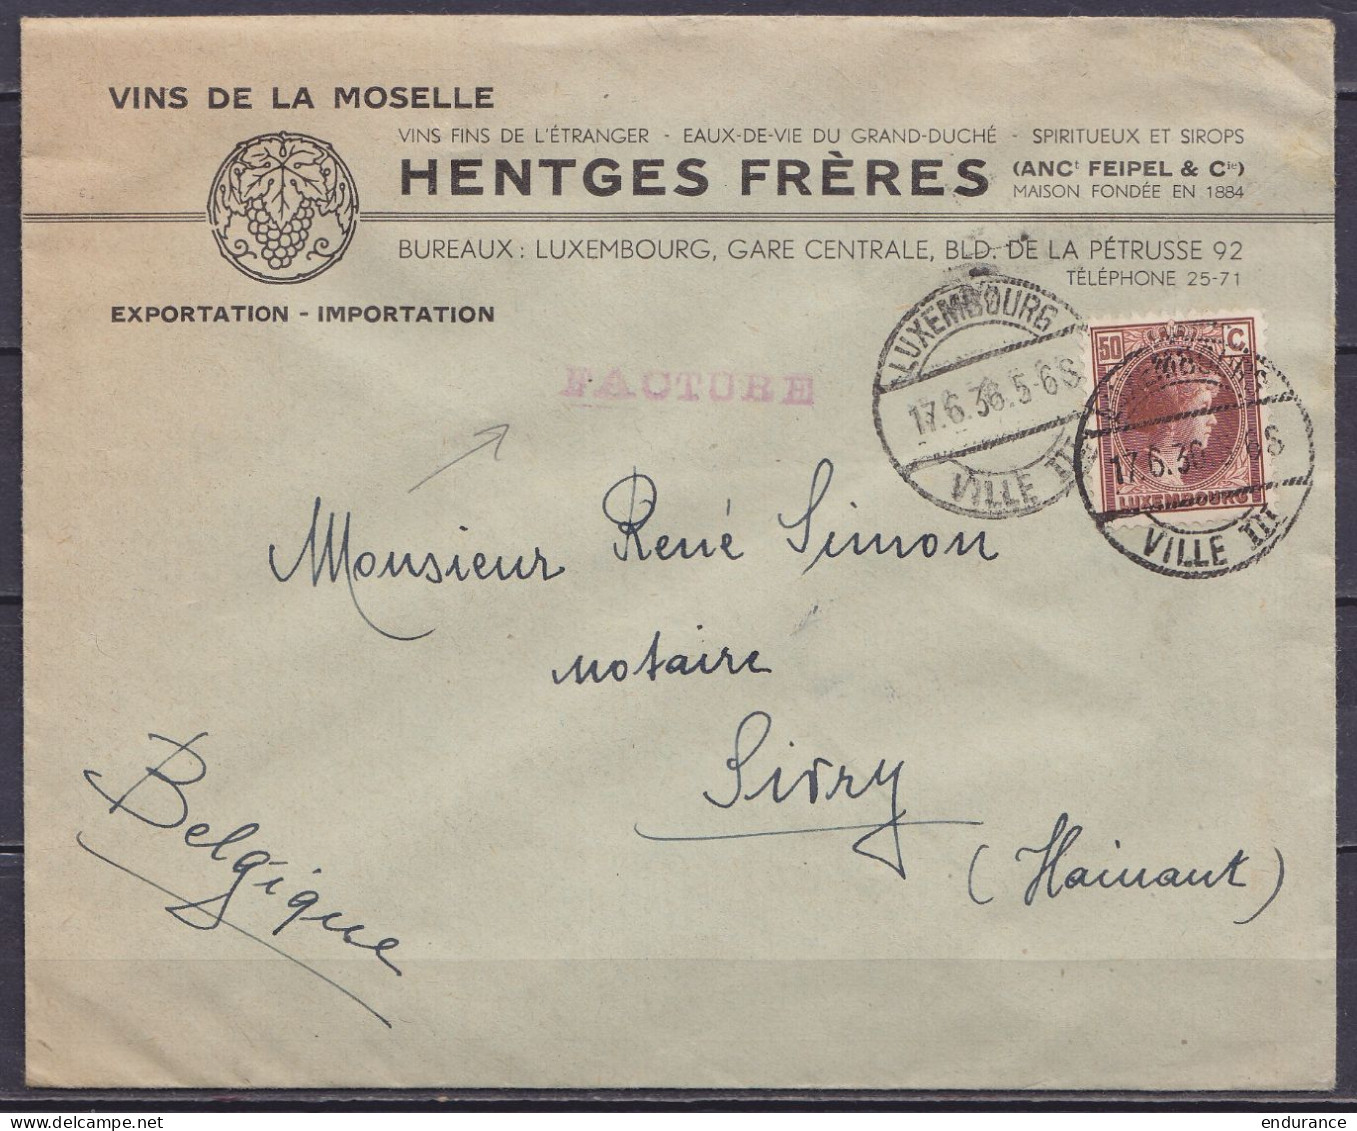 Luxembourg - L. Entête "Vins De La Moselle Hentges" Affr. 50c (tarif Facture) Càd "LUXEMBOURG /17.6.1936/ VILLE III" Pou - 1926-39 Charlotte Right-hand Side